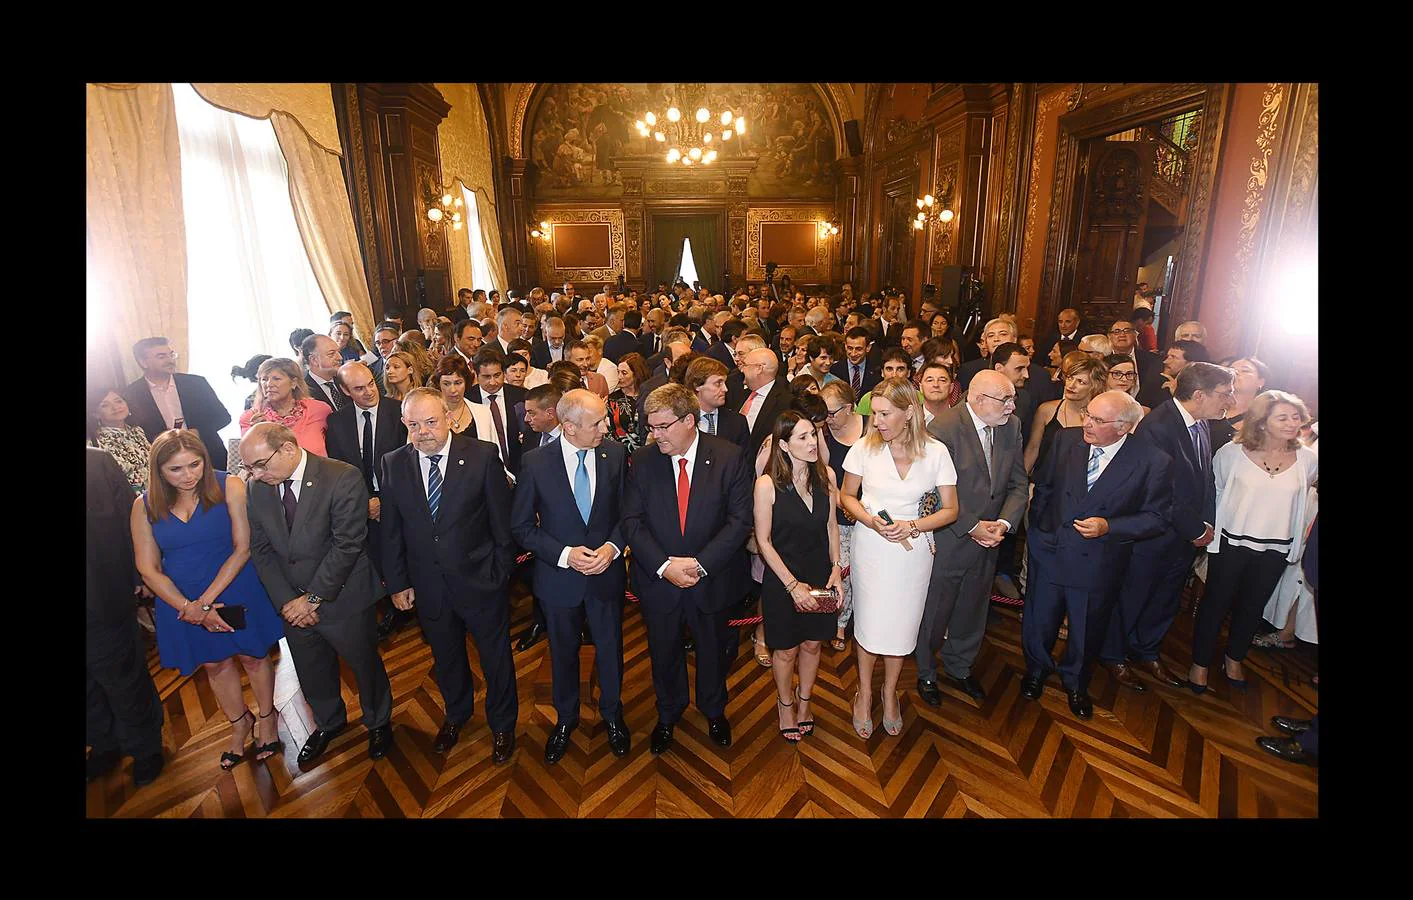 Consejeros del Gobierno vasco, el alcalde de Bilbao, la presidenta del Parlamento, la presidenta de las Juntas Generales de Bizkaia y el exlehendakari Ardanza, entre los asistentes a la recepción de San Ignacio